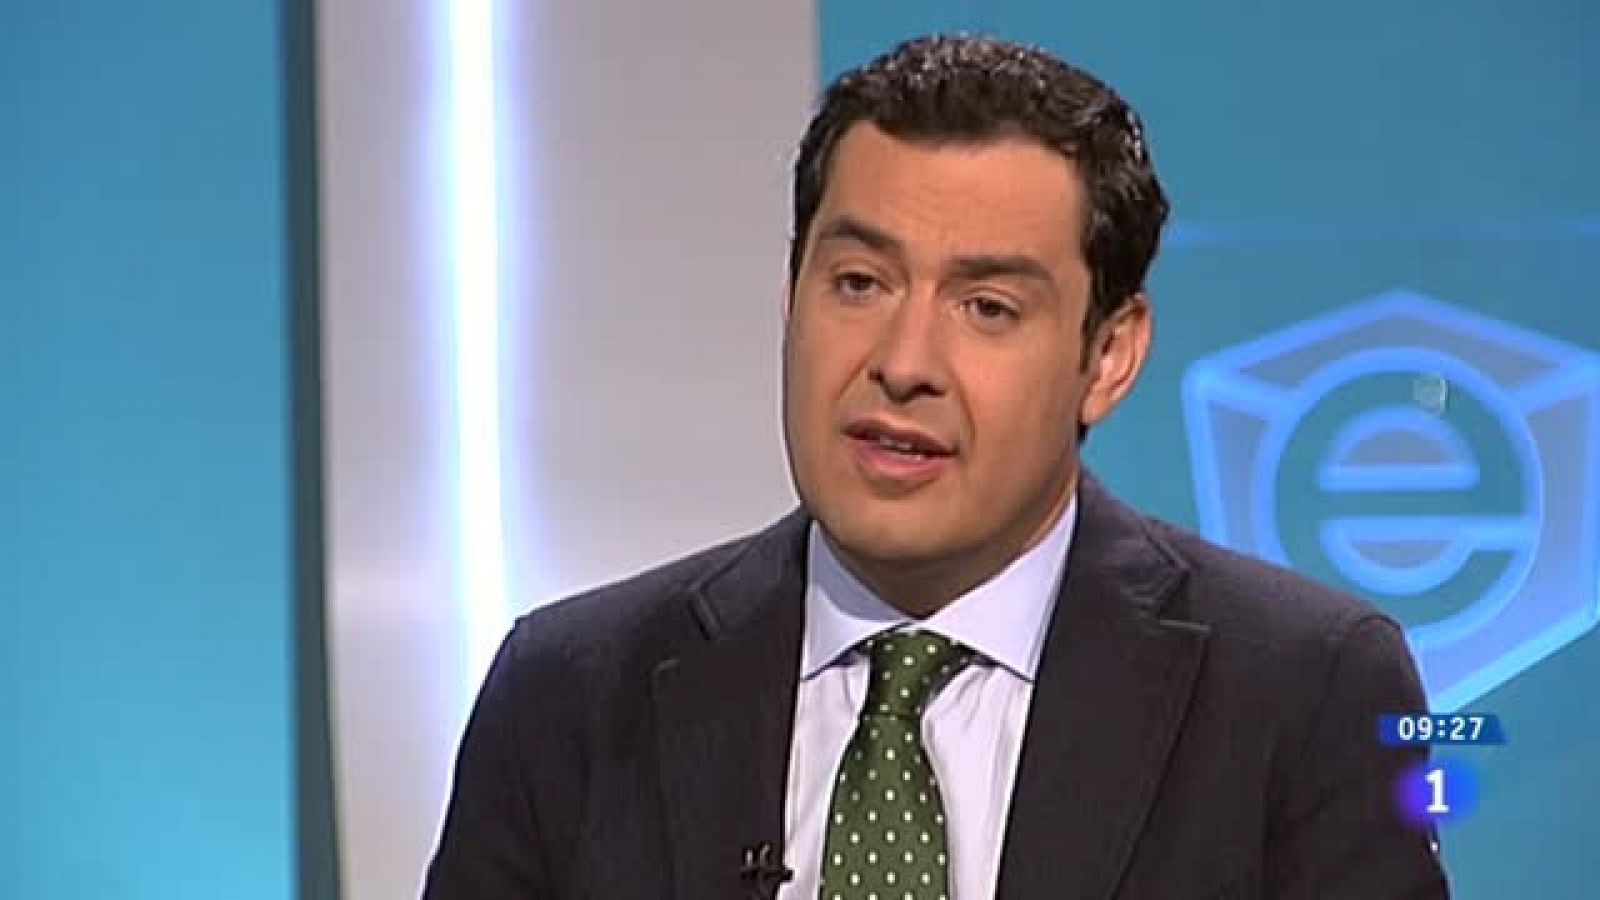 Juanma Moreno (PP) promete "controles muy férreos" para evitar la corrupción en Andalucía